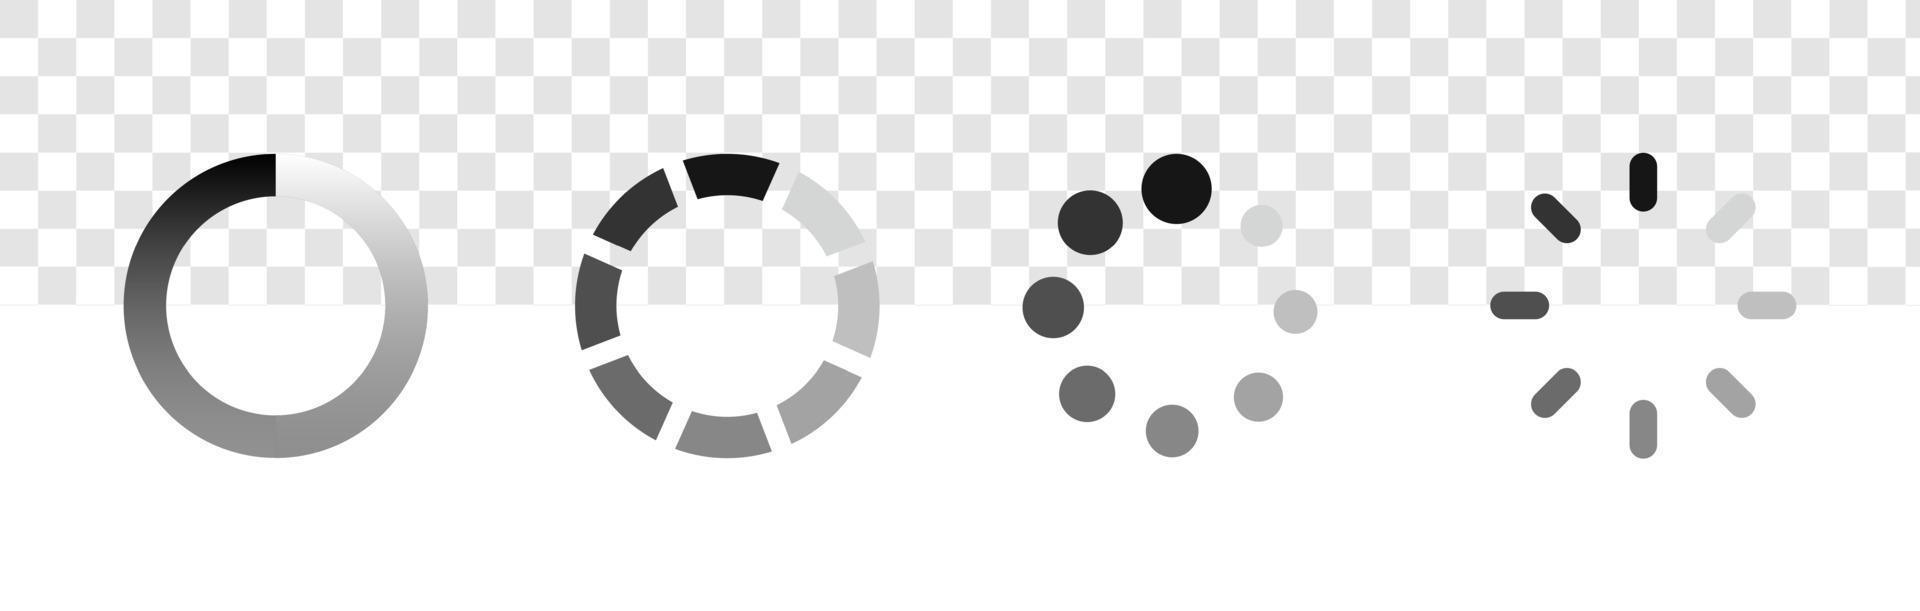 caricamento set di icone isolato su sfondo trasparente. simbolo di buffering migliore per il web del lettore video. vettore